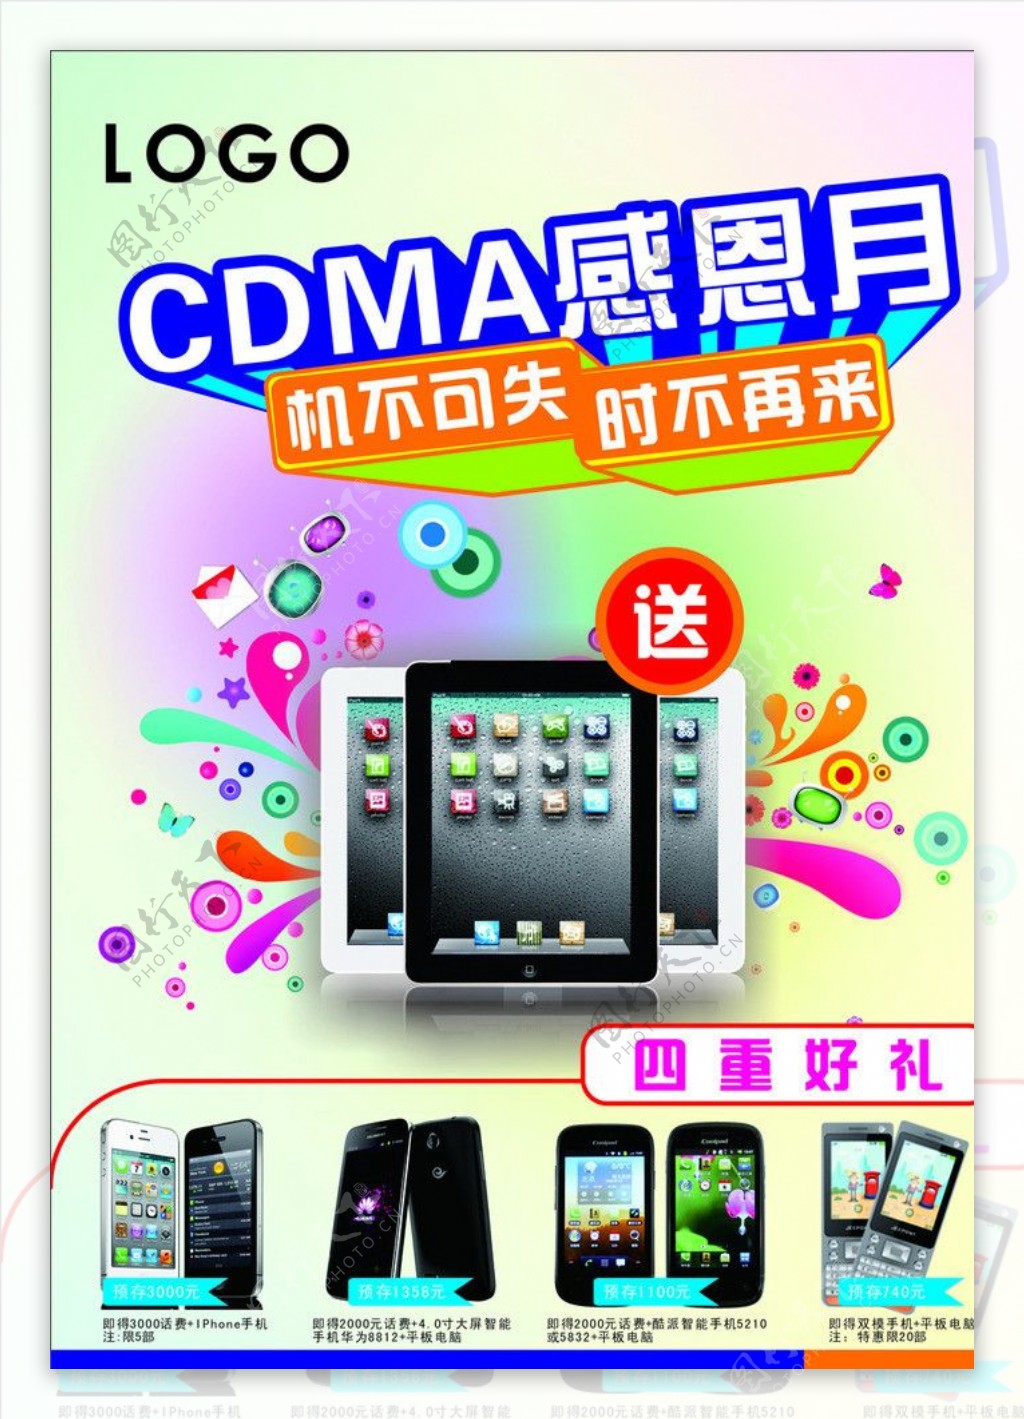 CDMA手机促销宣传图片